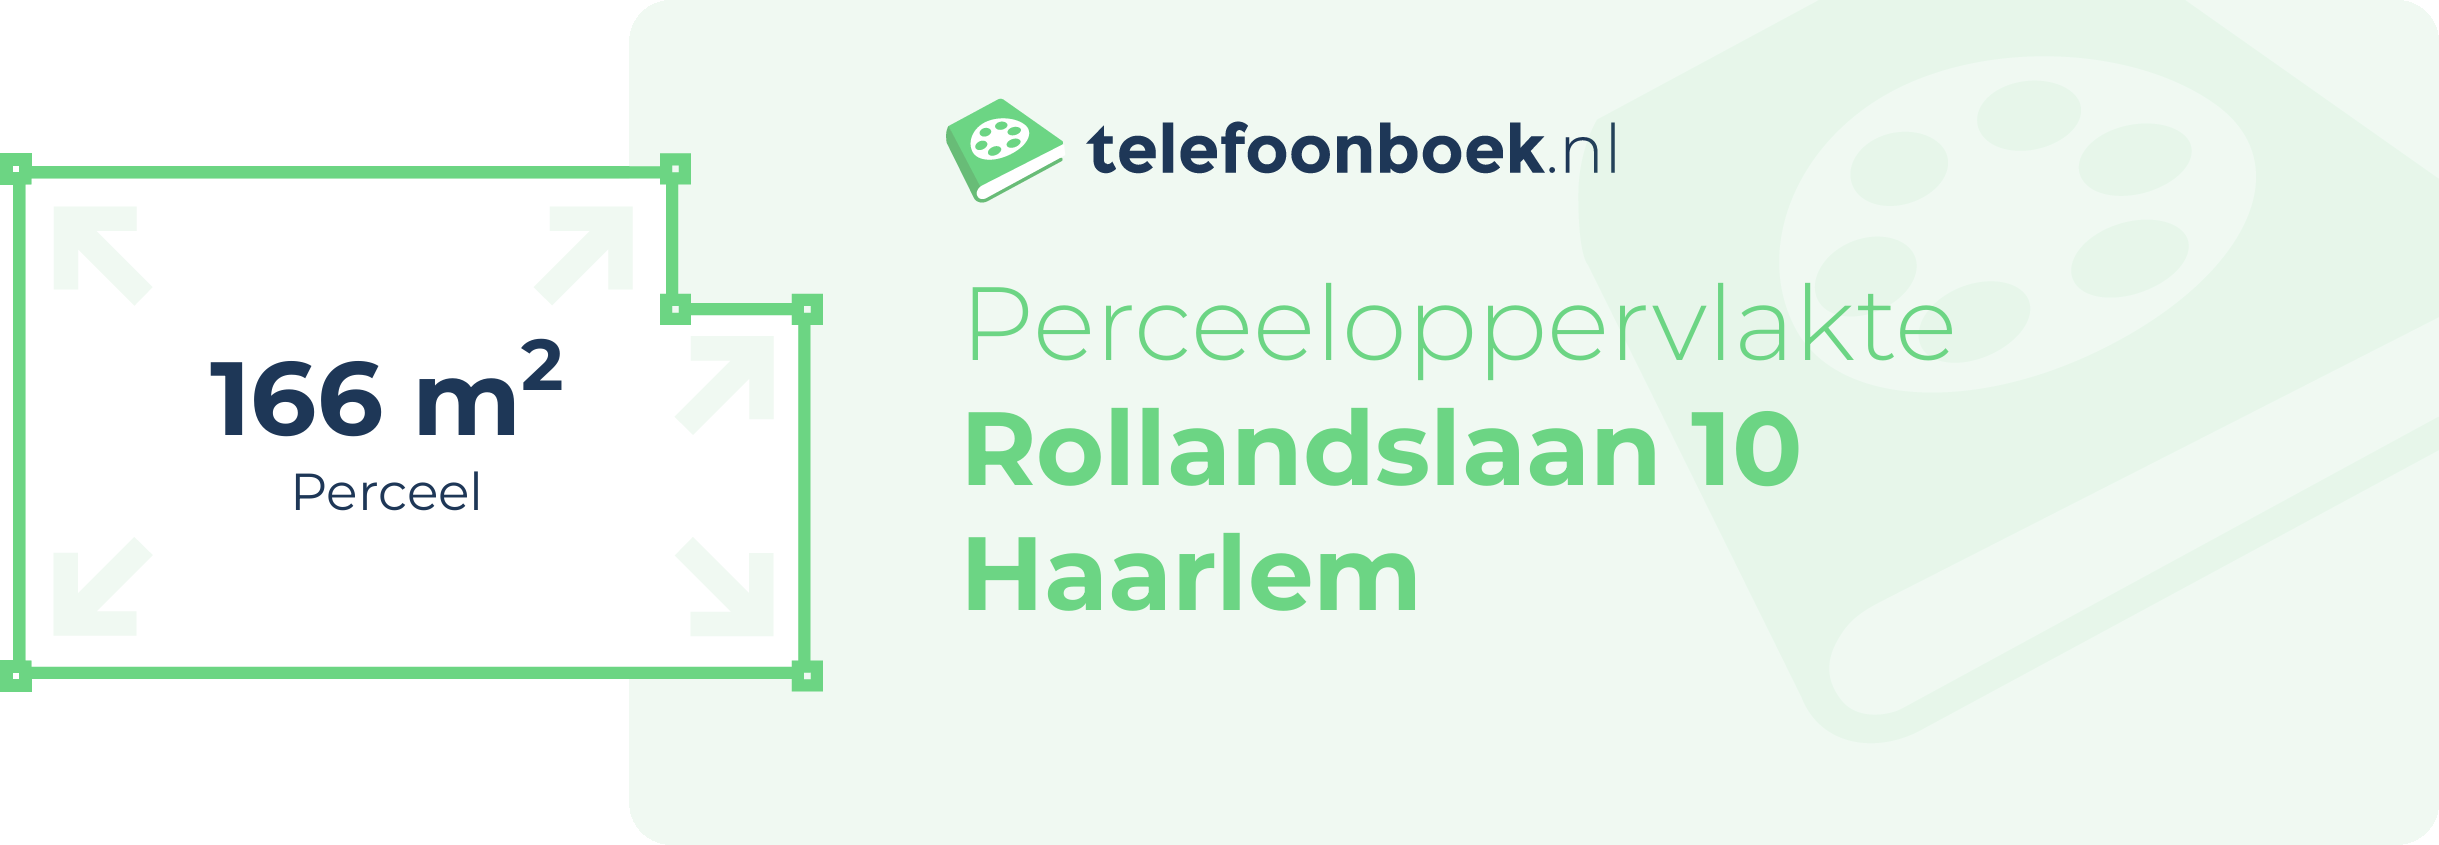 Perceeloppervlakte Rollandslaan 10 Haarlem